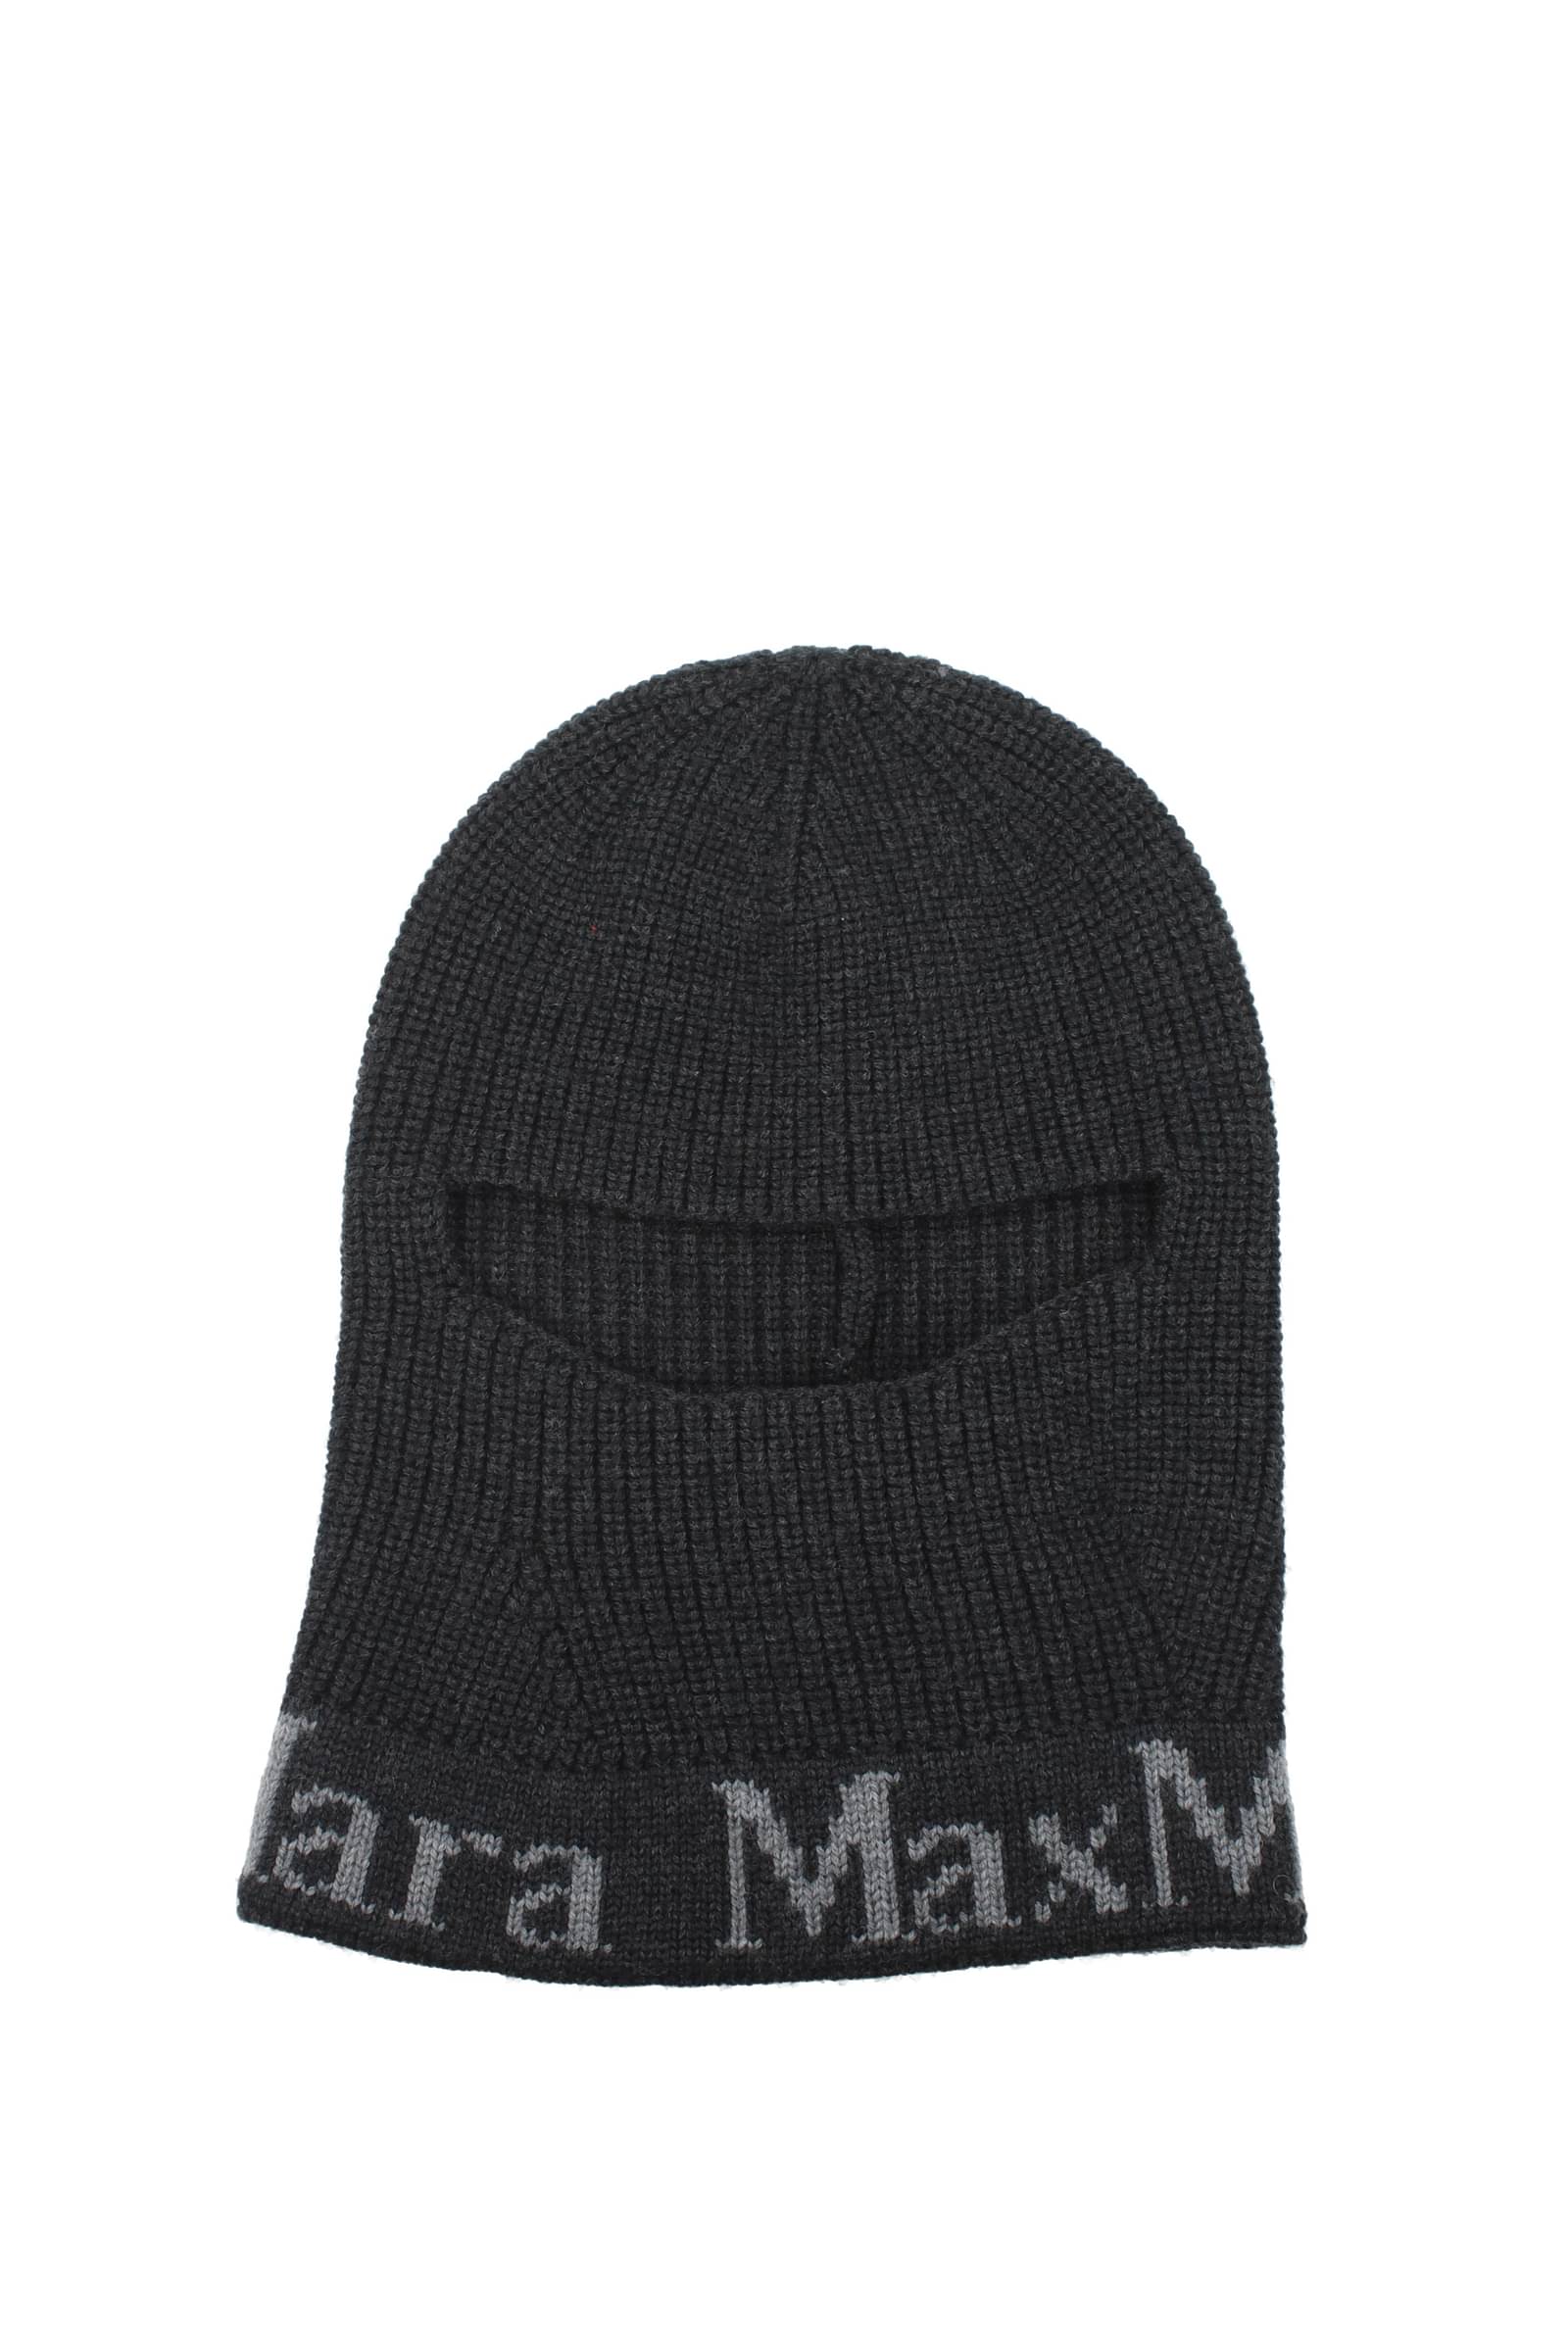 Max Mara 帽子女士45760224600004 羊毛黑色灰色63€